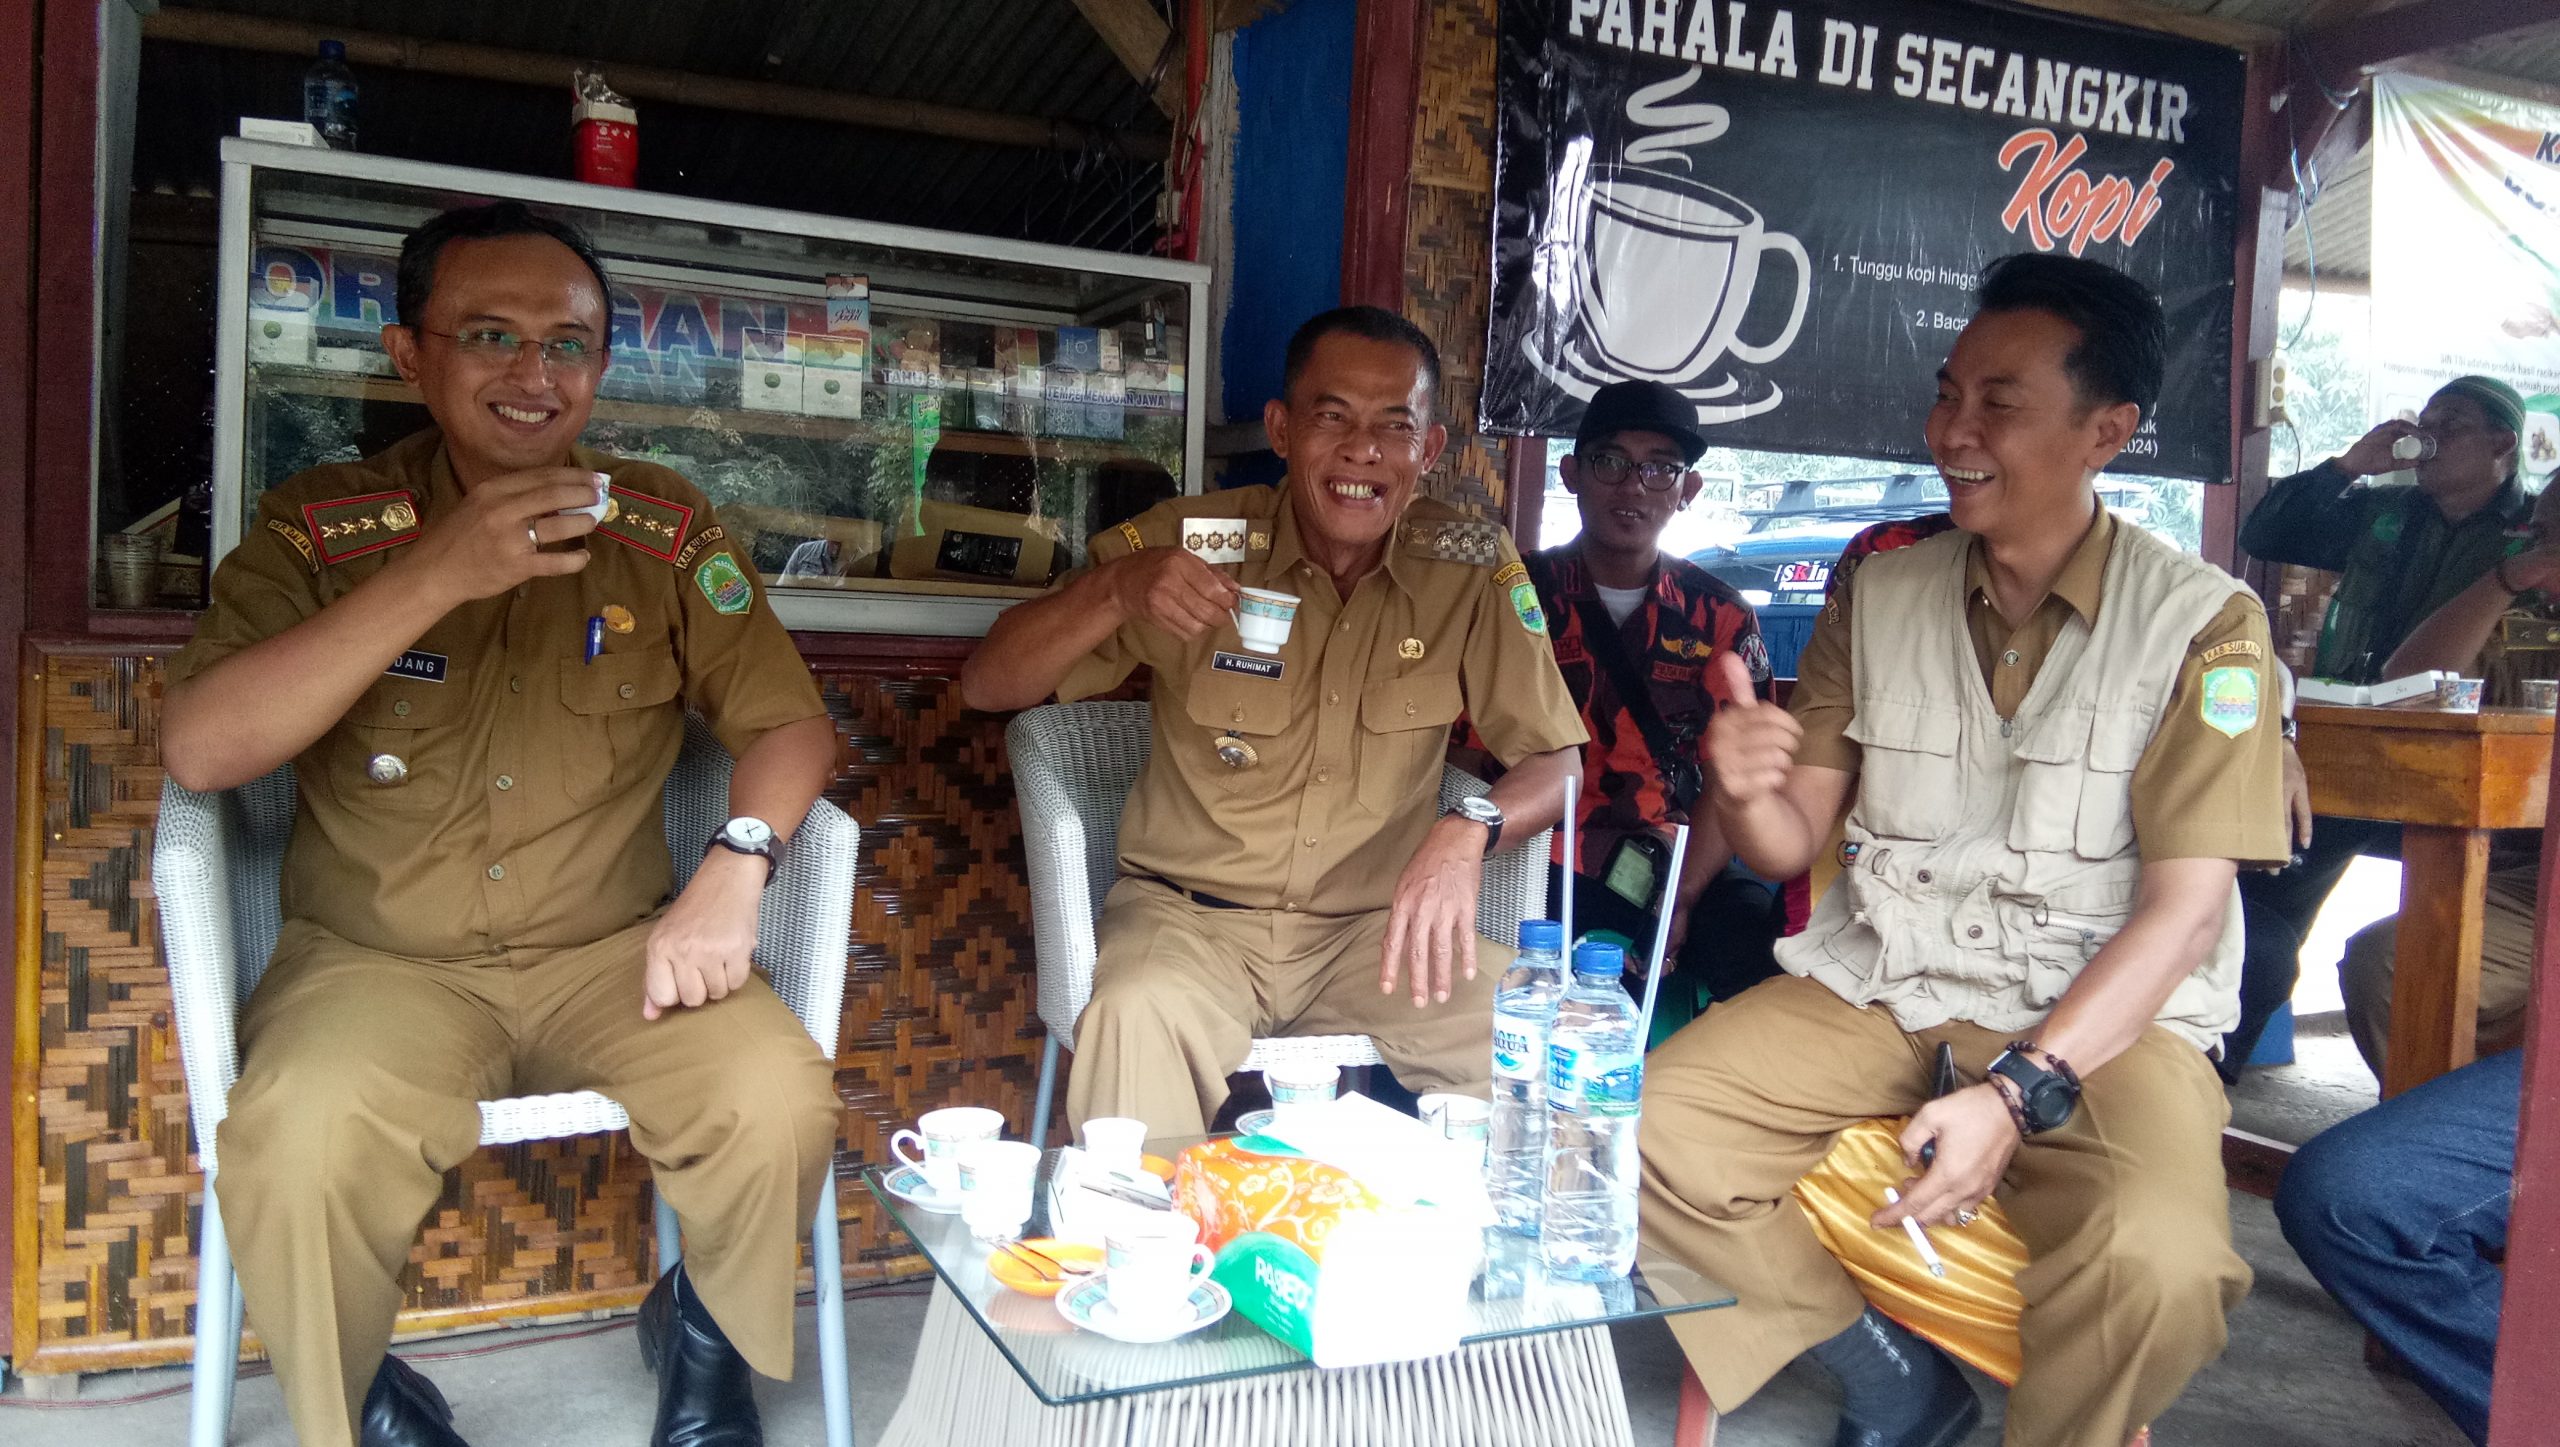 Mampir ke Kedai Kopi Jawara Subang, Bupati: Ini Harus Diviralkan